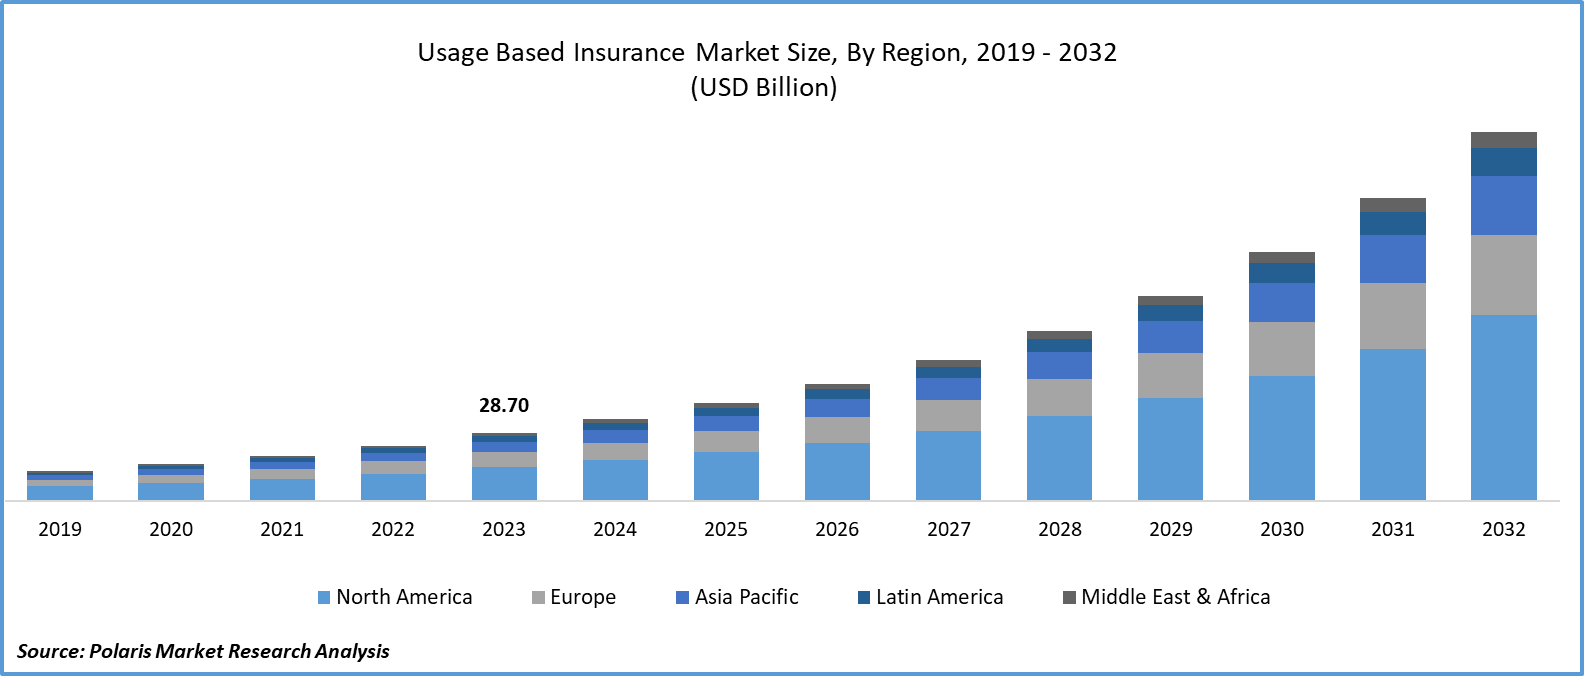 Usage Based Insurance Market Size